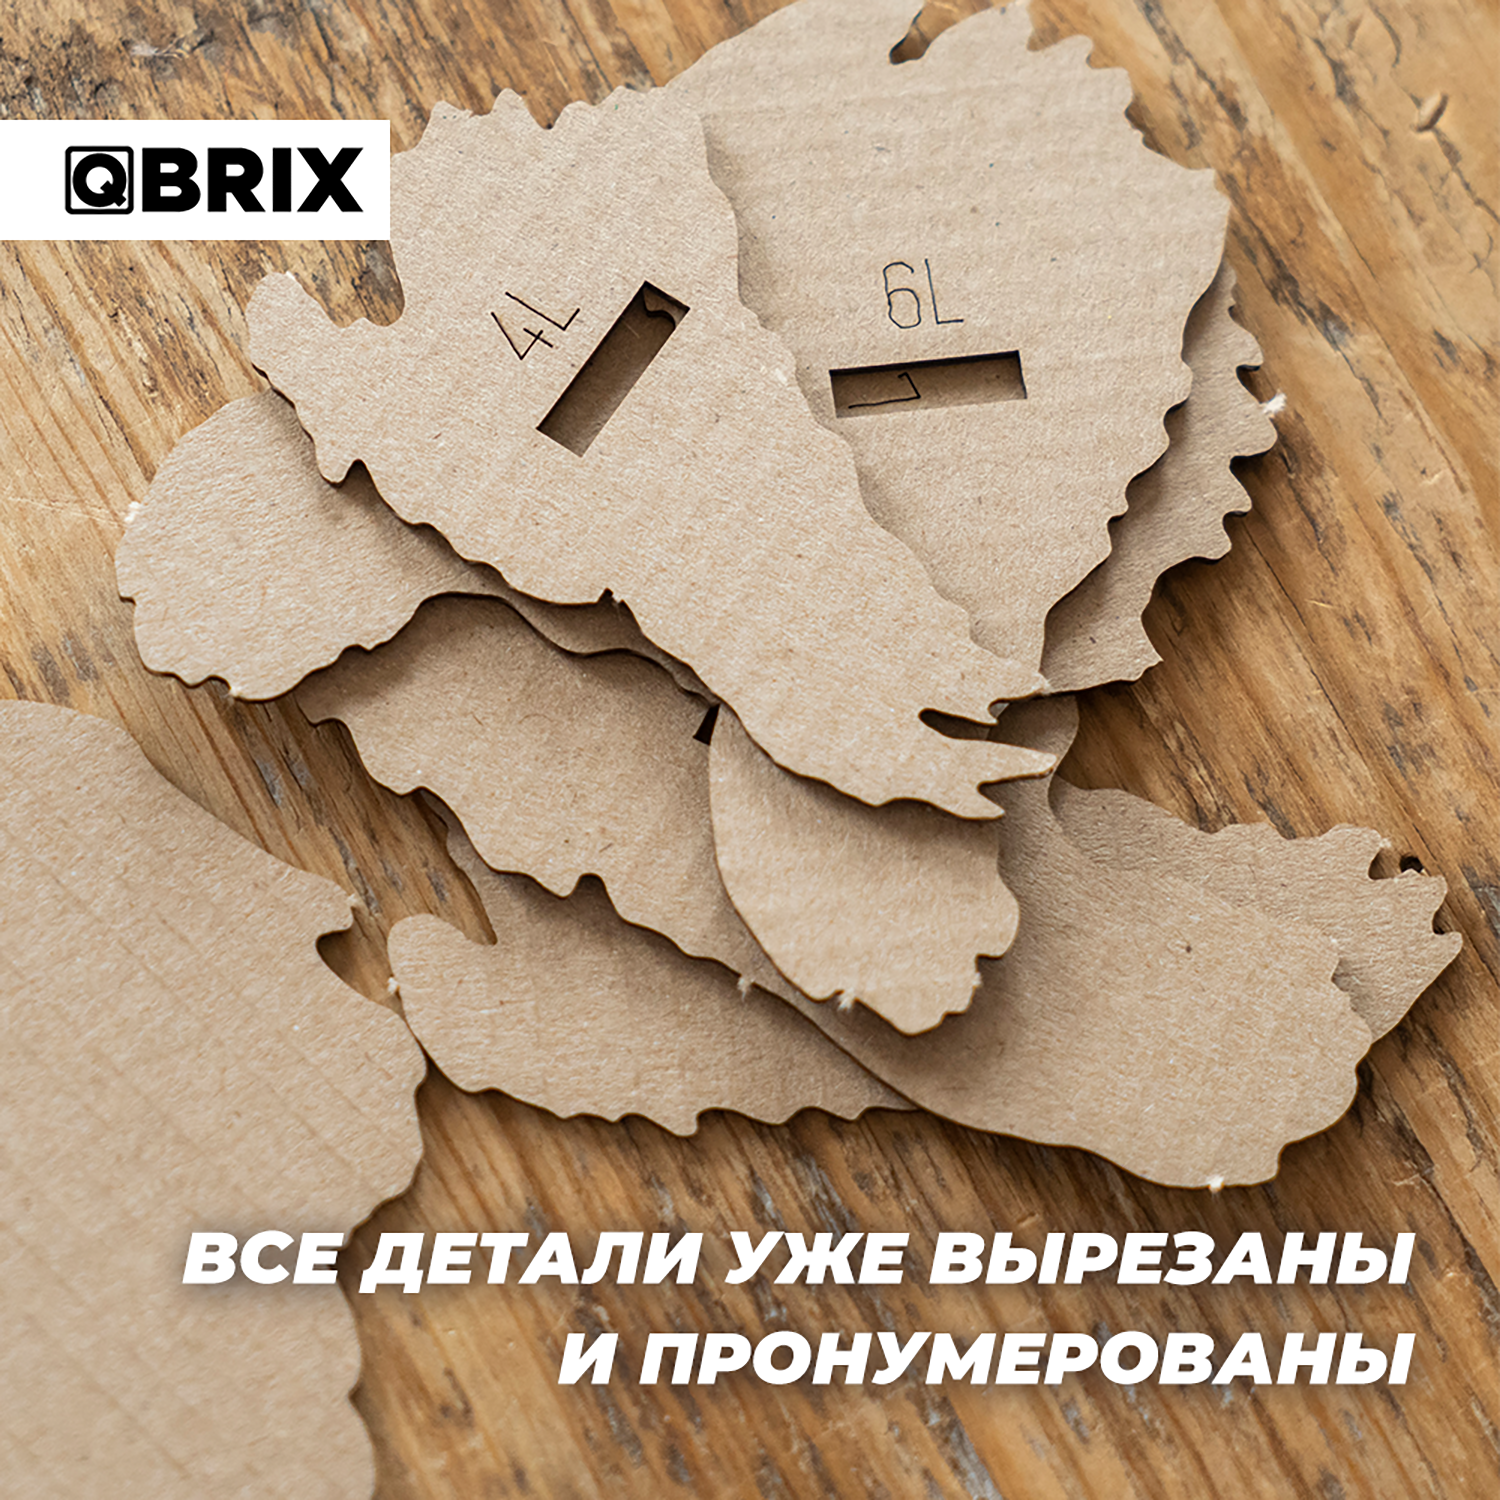 Конструктор QBRIX 3D картонный Эйнштейн 20002 20002 - фото 5